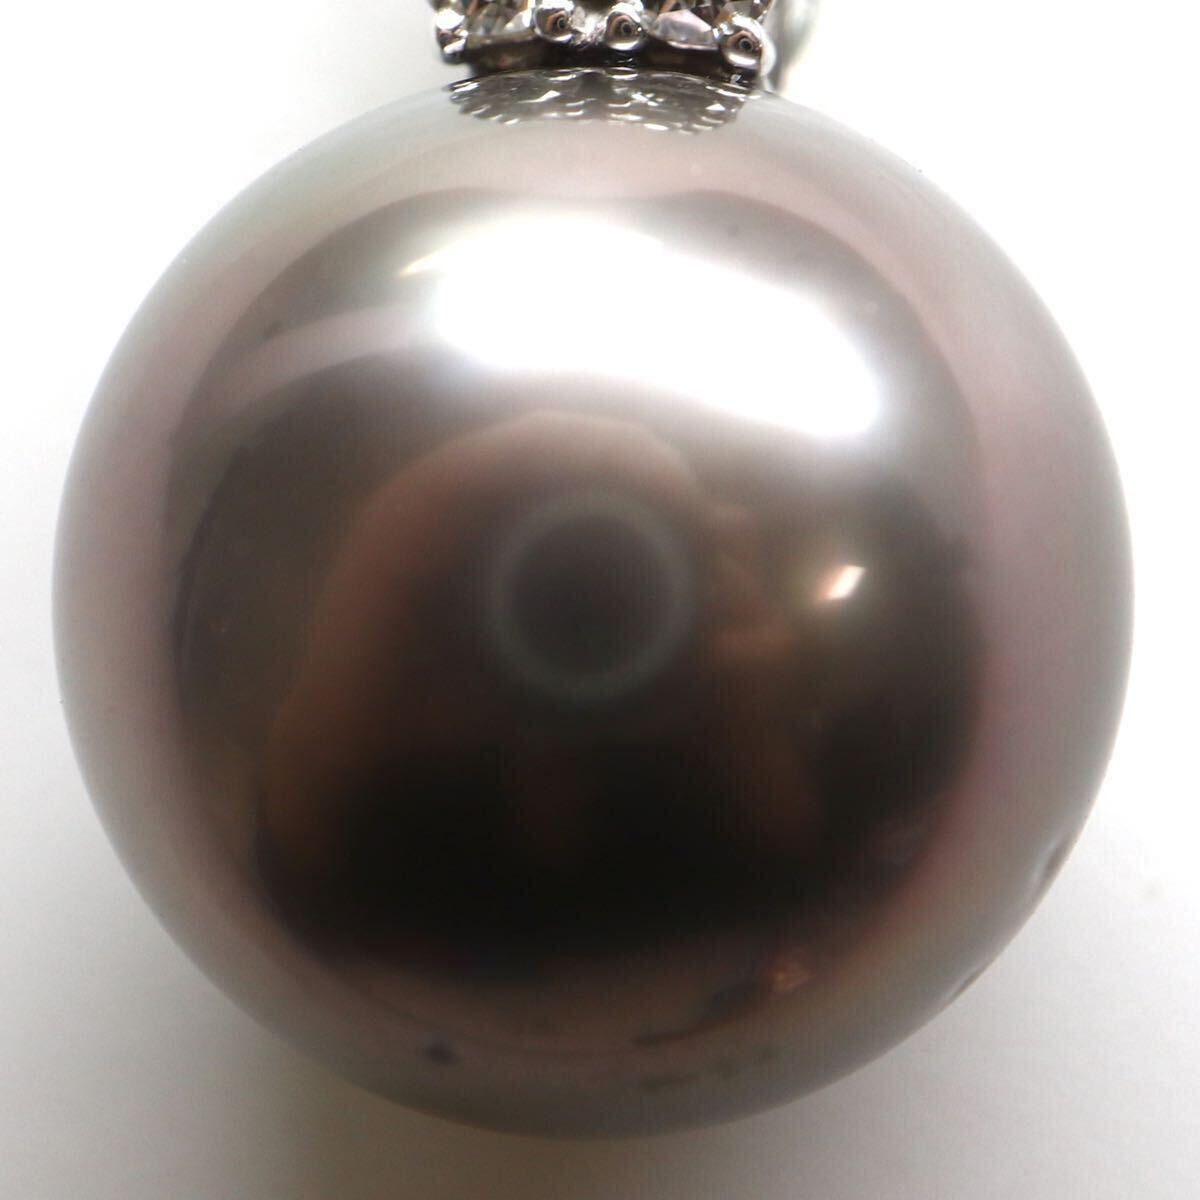 豪華!!TASAKI(田崎真珠)《K18WG 天然ダイヤモンド/南洋黒蝶真珠ペンダントトップ》A 約5.6g 0.29ct pearl diamond pendant jewelryEB4/EB9の画像4